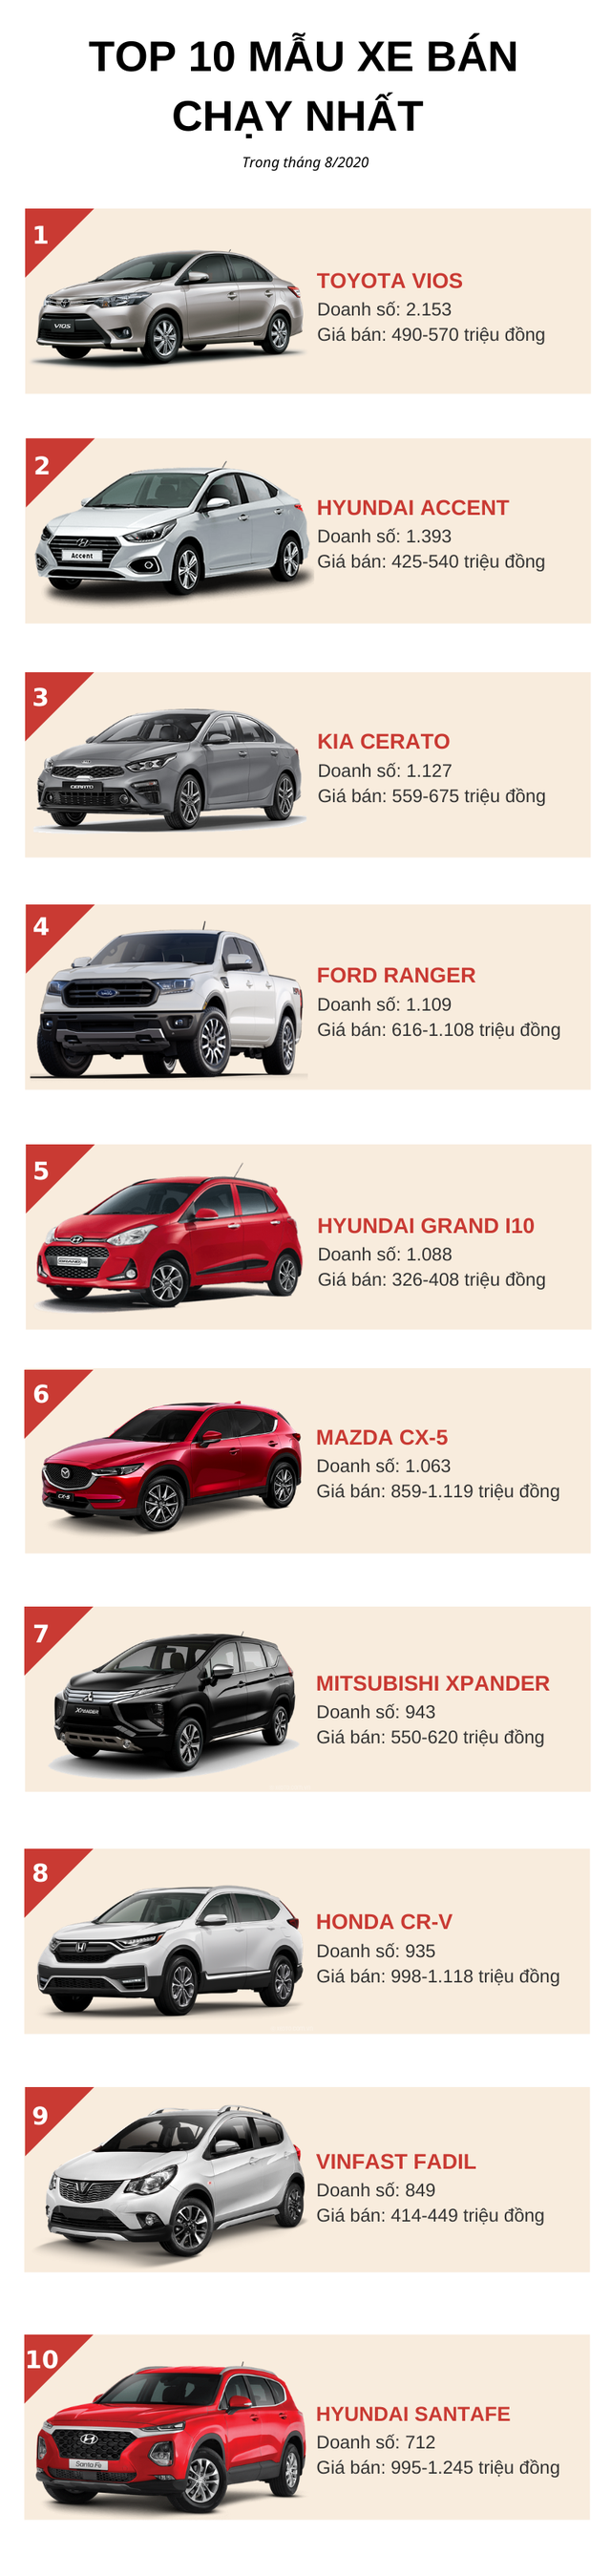 Top 10 ô tô bán chạy nhất tháng 8/2020: KIA Cerato nhảy vọt, Hyundai Grand i10 lấy lại phong độ - Ảnh 1.